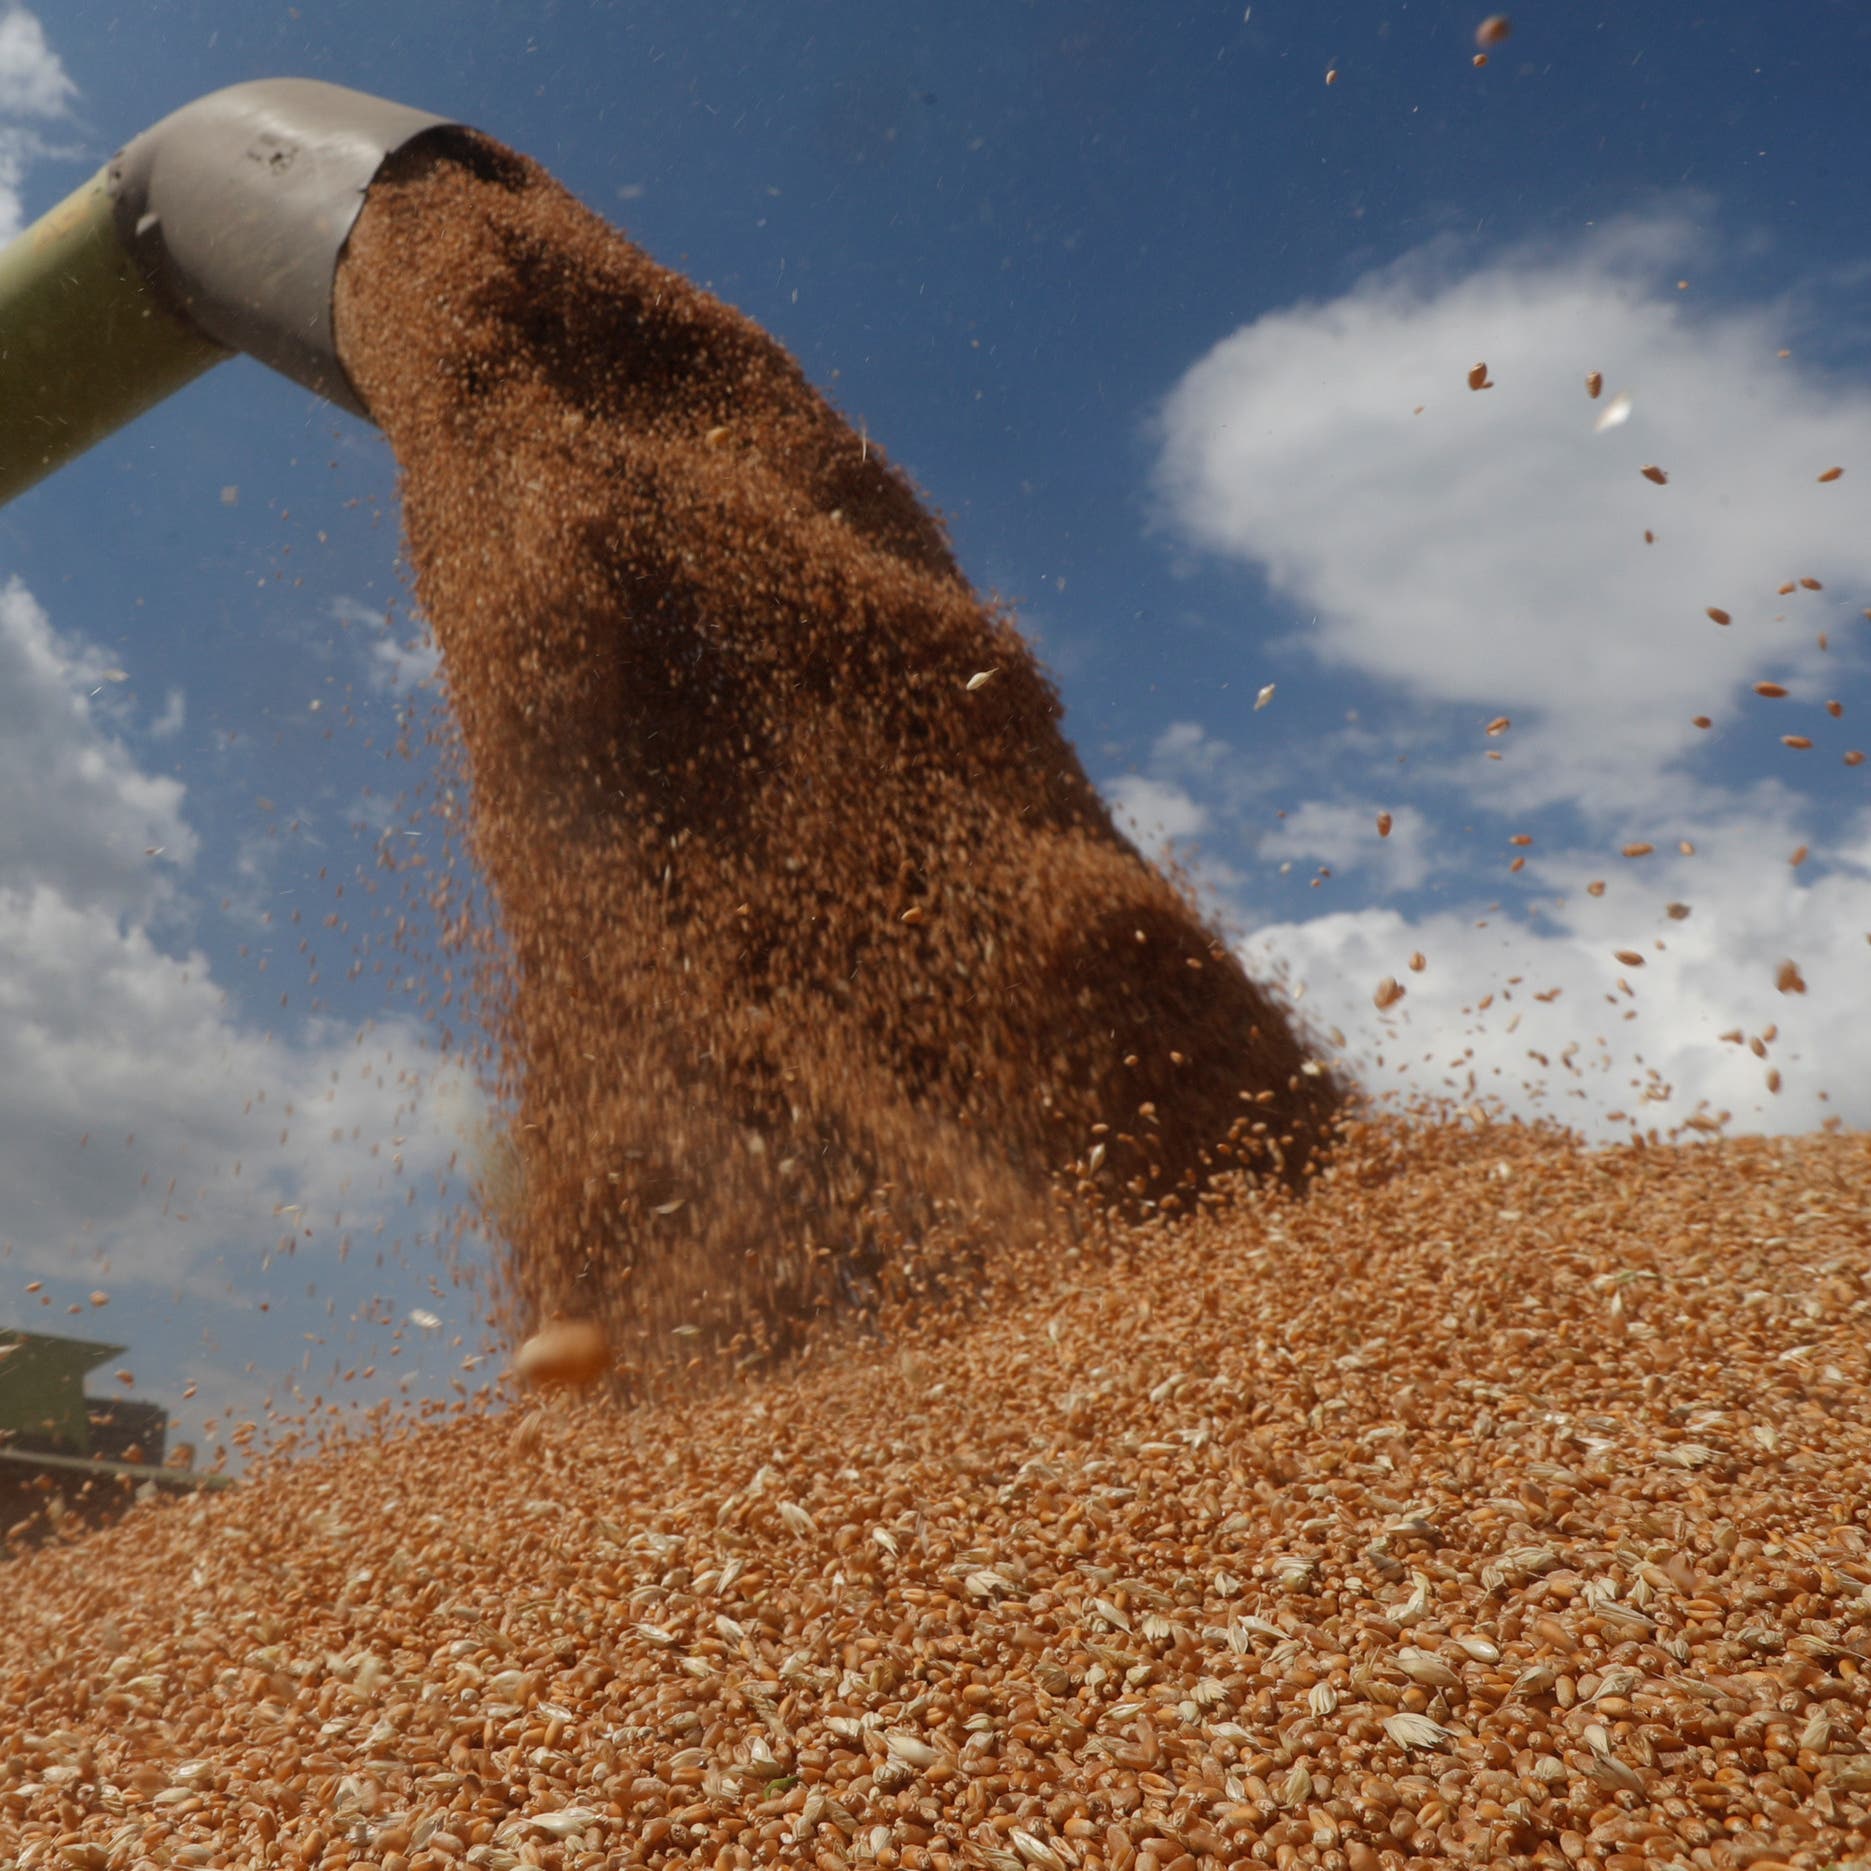 مجلس الوزراء: مخزون مصر من القمح يكفي 2.6 شهر